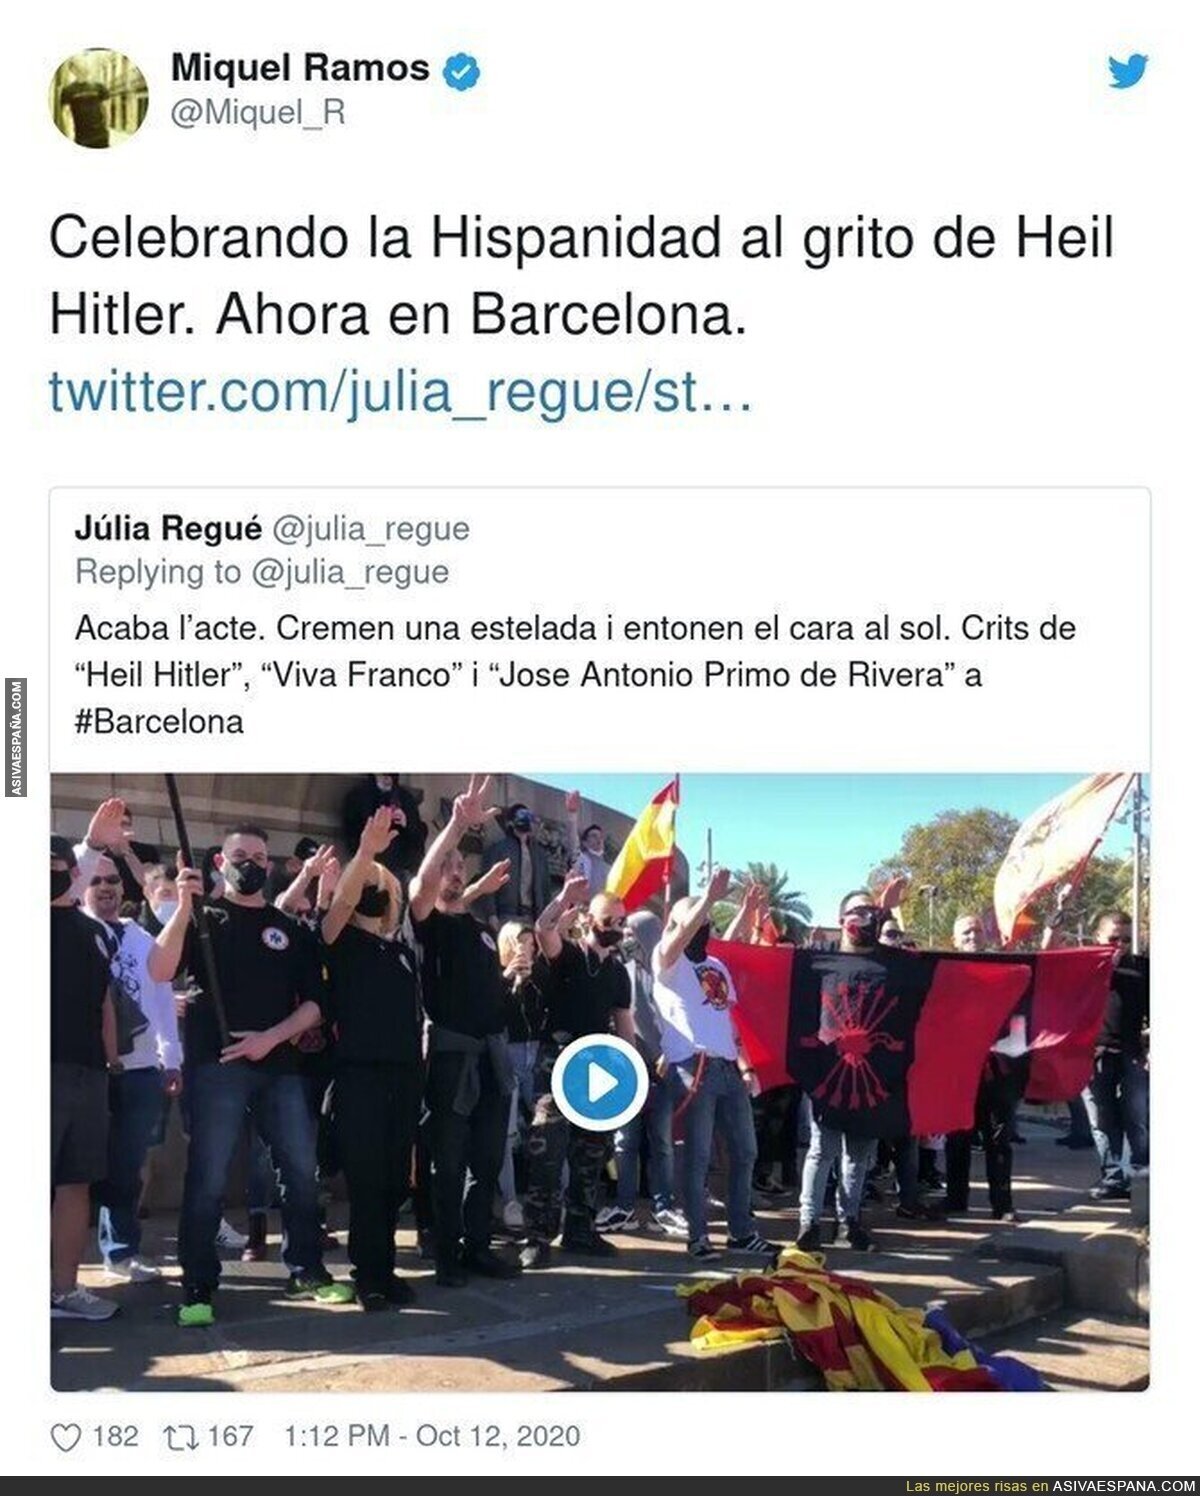 No son españoles son facistas celebrando el genocidio de la raza inferior